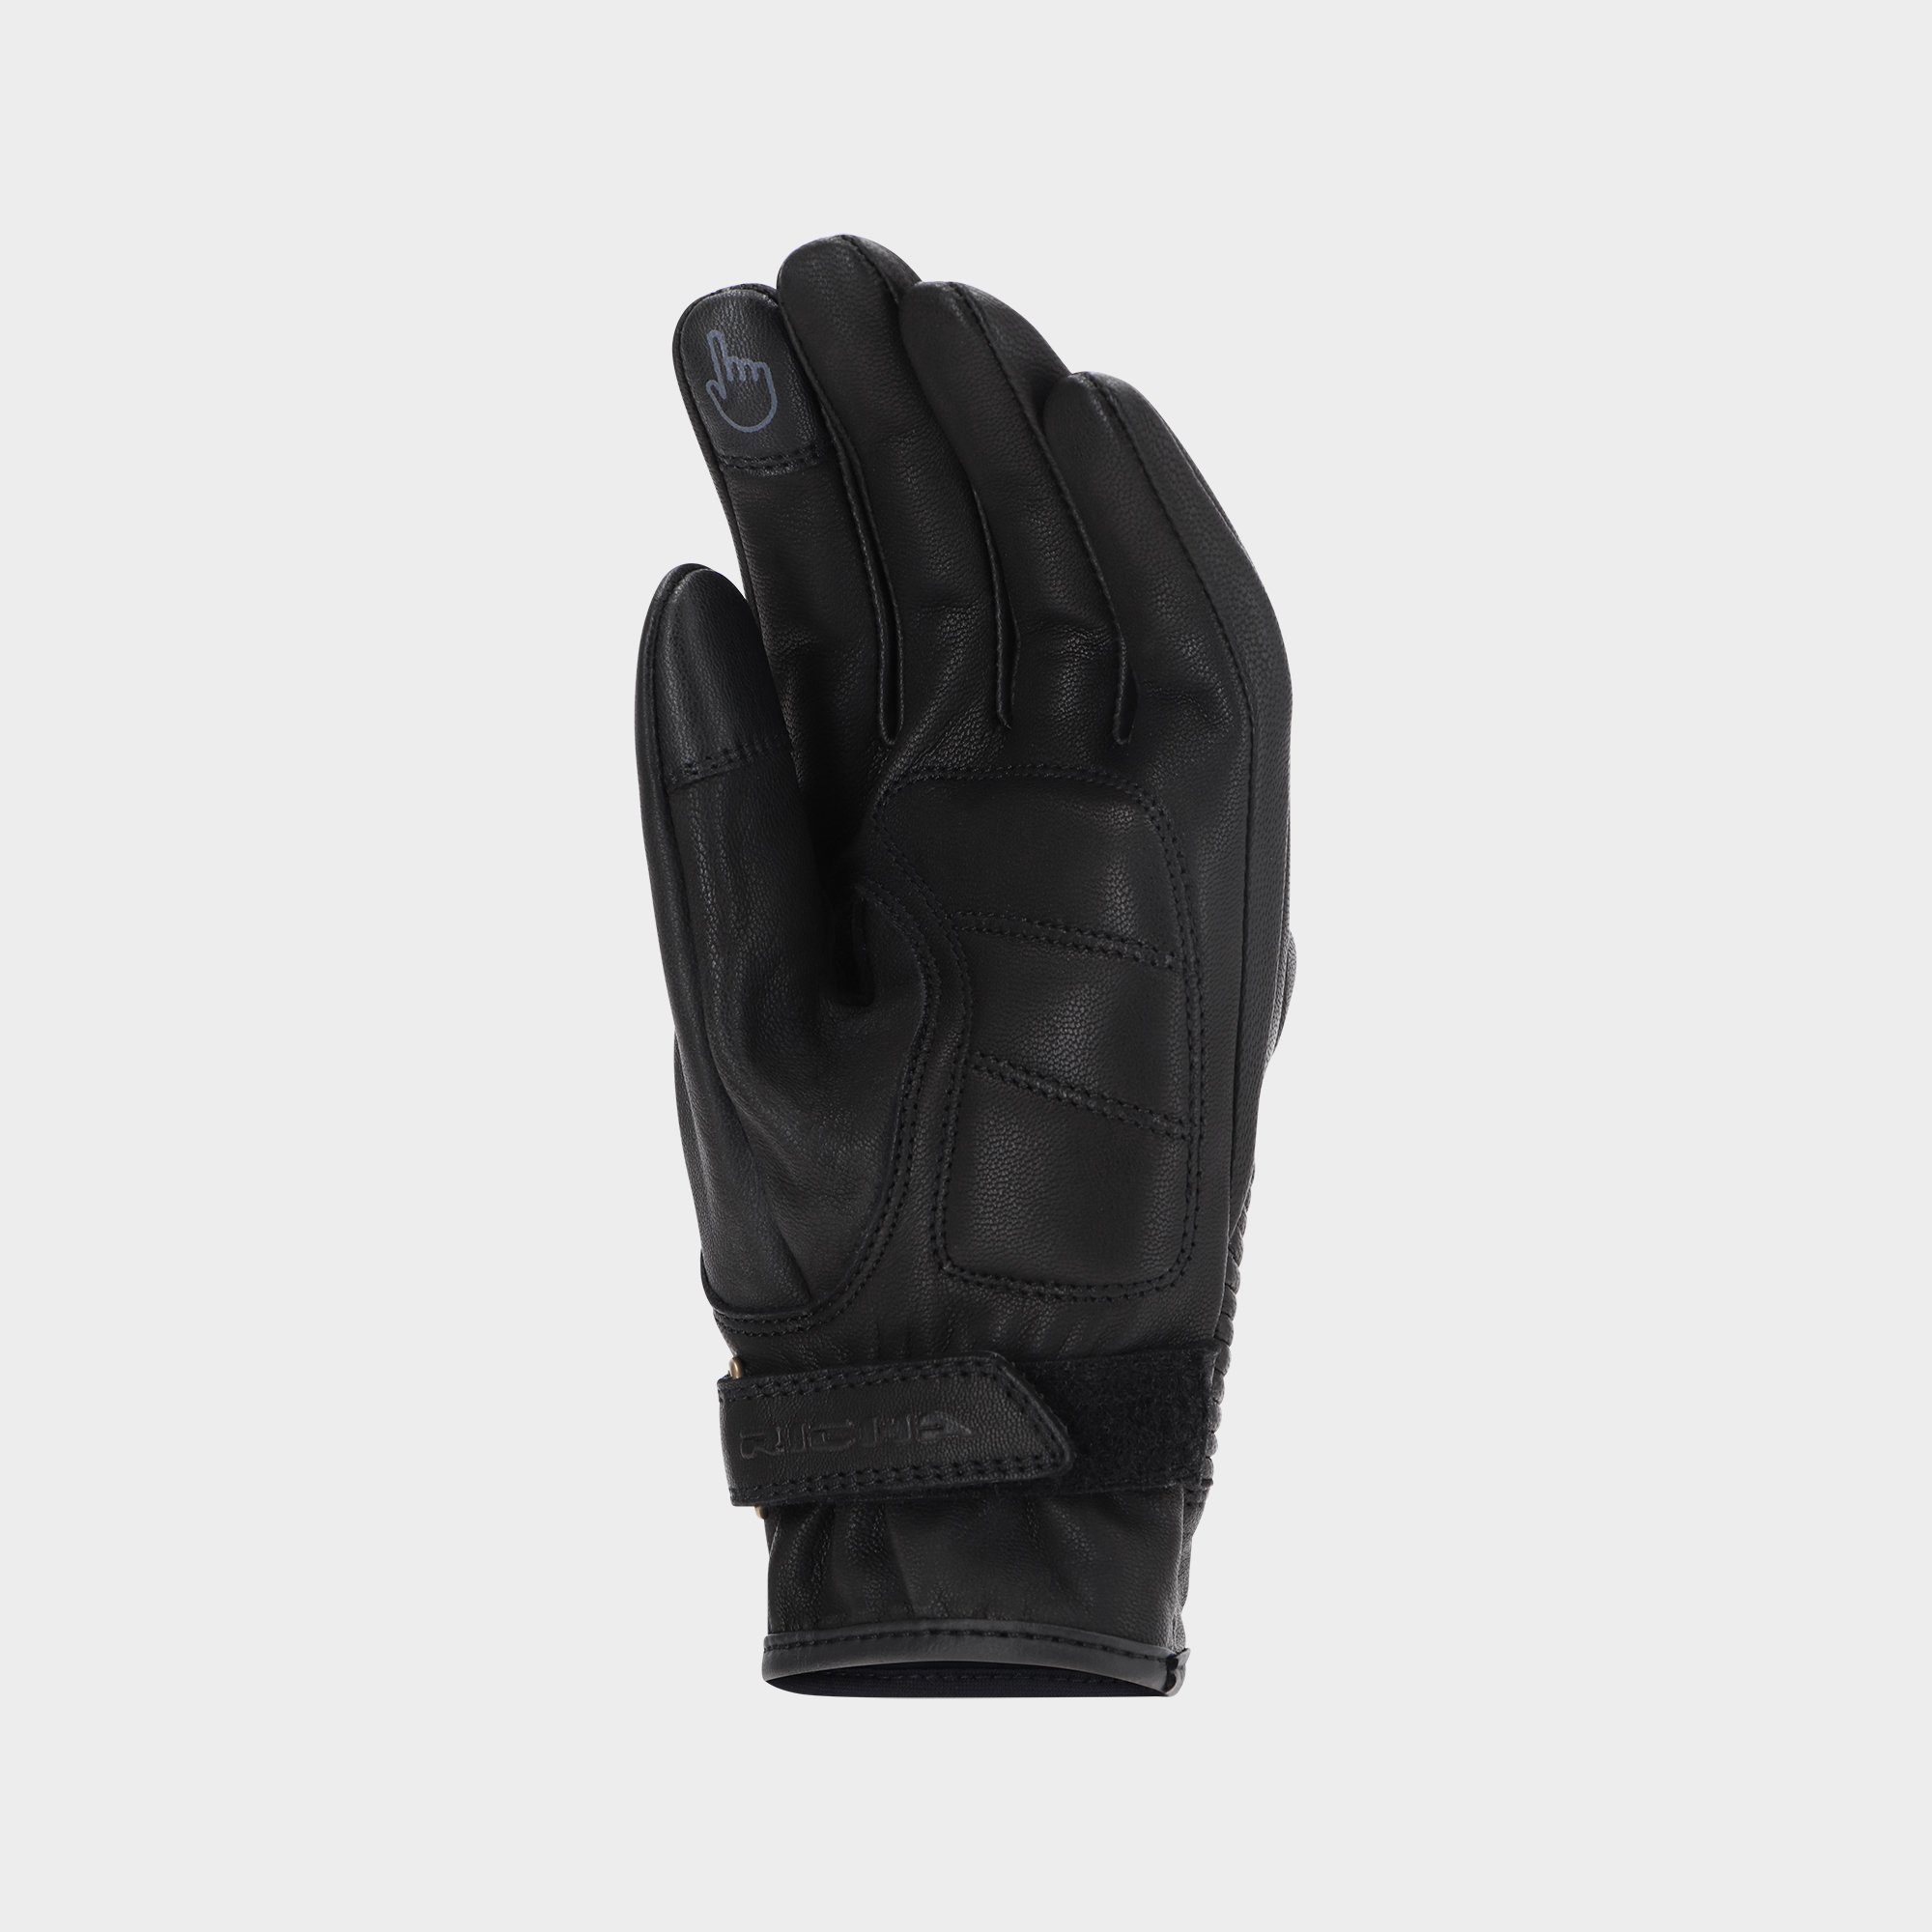 Damen Herren Richa Motorradhandschuhe Nazaire schwarz Leder Richa Handschuh Handprotektoren